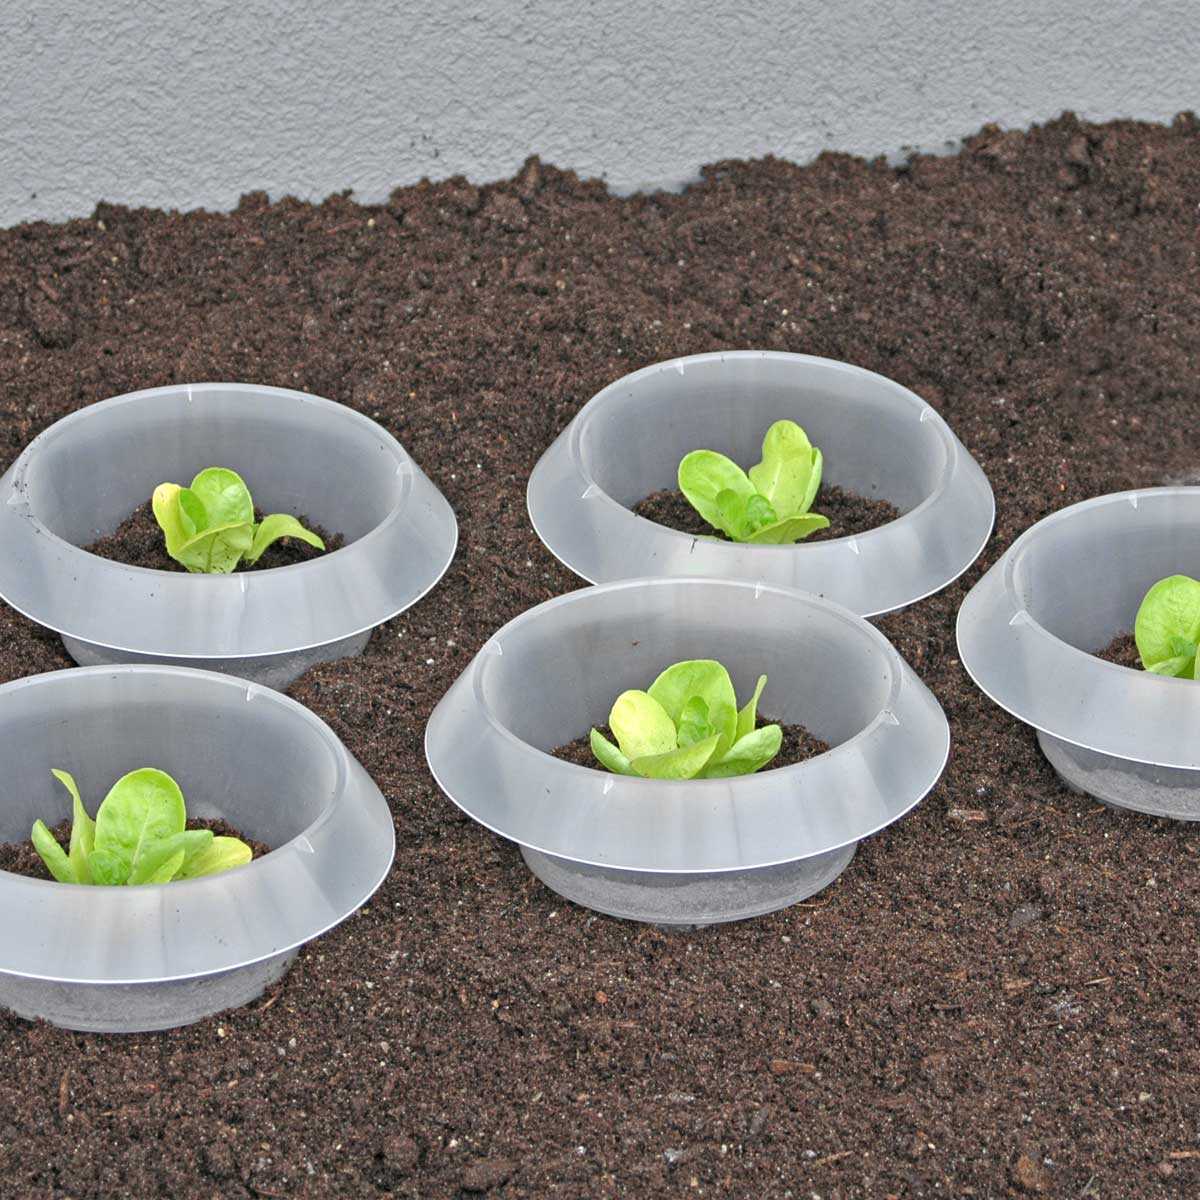 Generisch Lot de 10 bagues de protection anti-limaces Diamètre : 14-20 cm Vert Protection efficace de vos jeunes plantes contre les limaces 